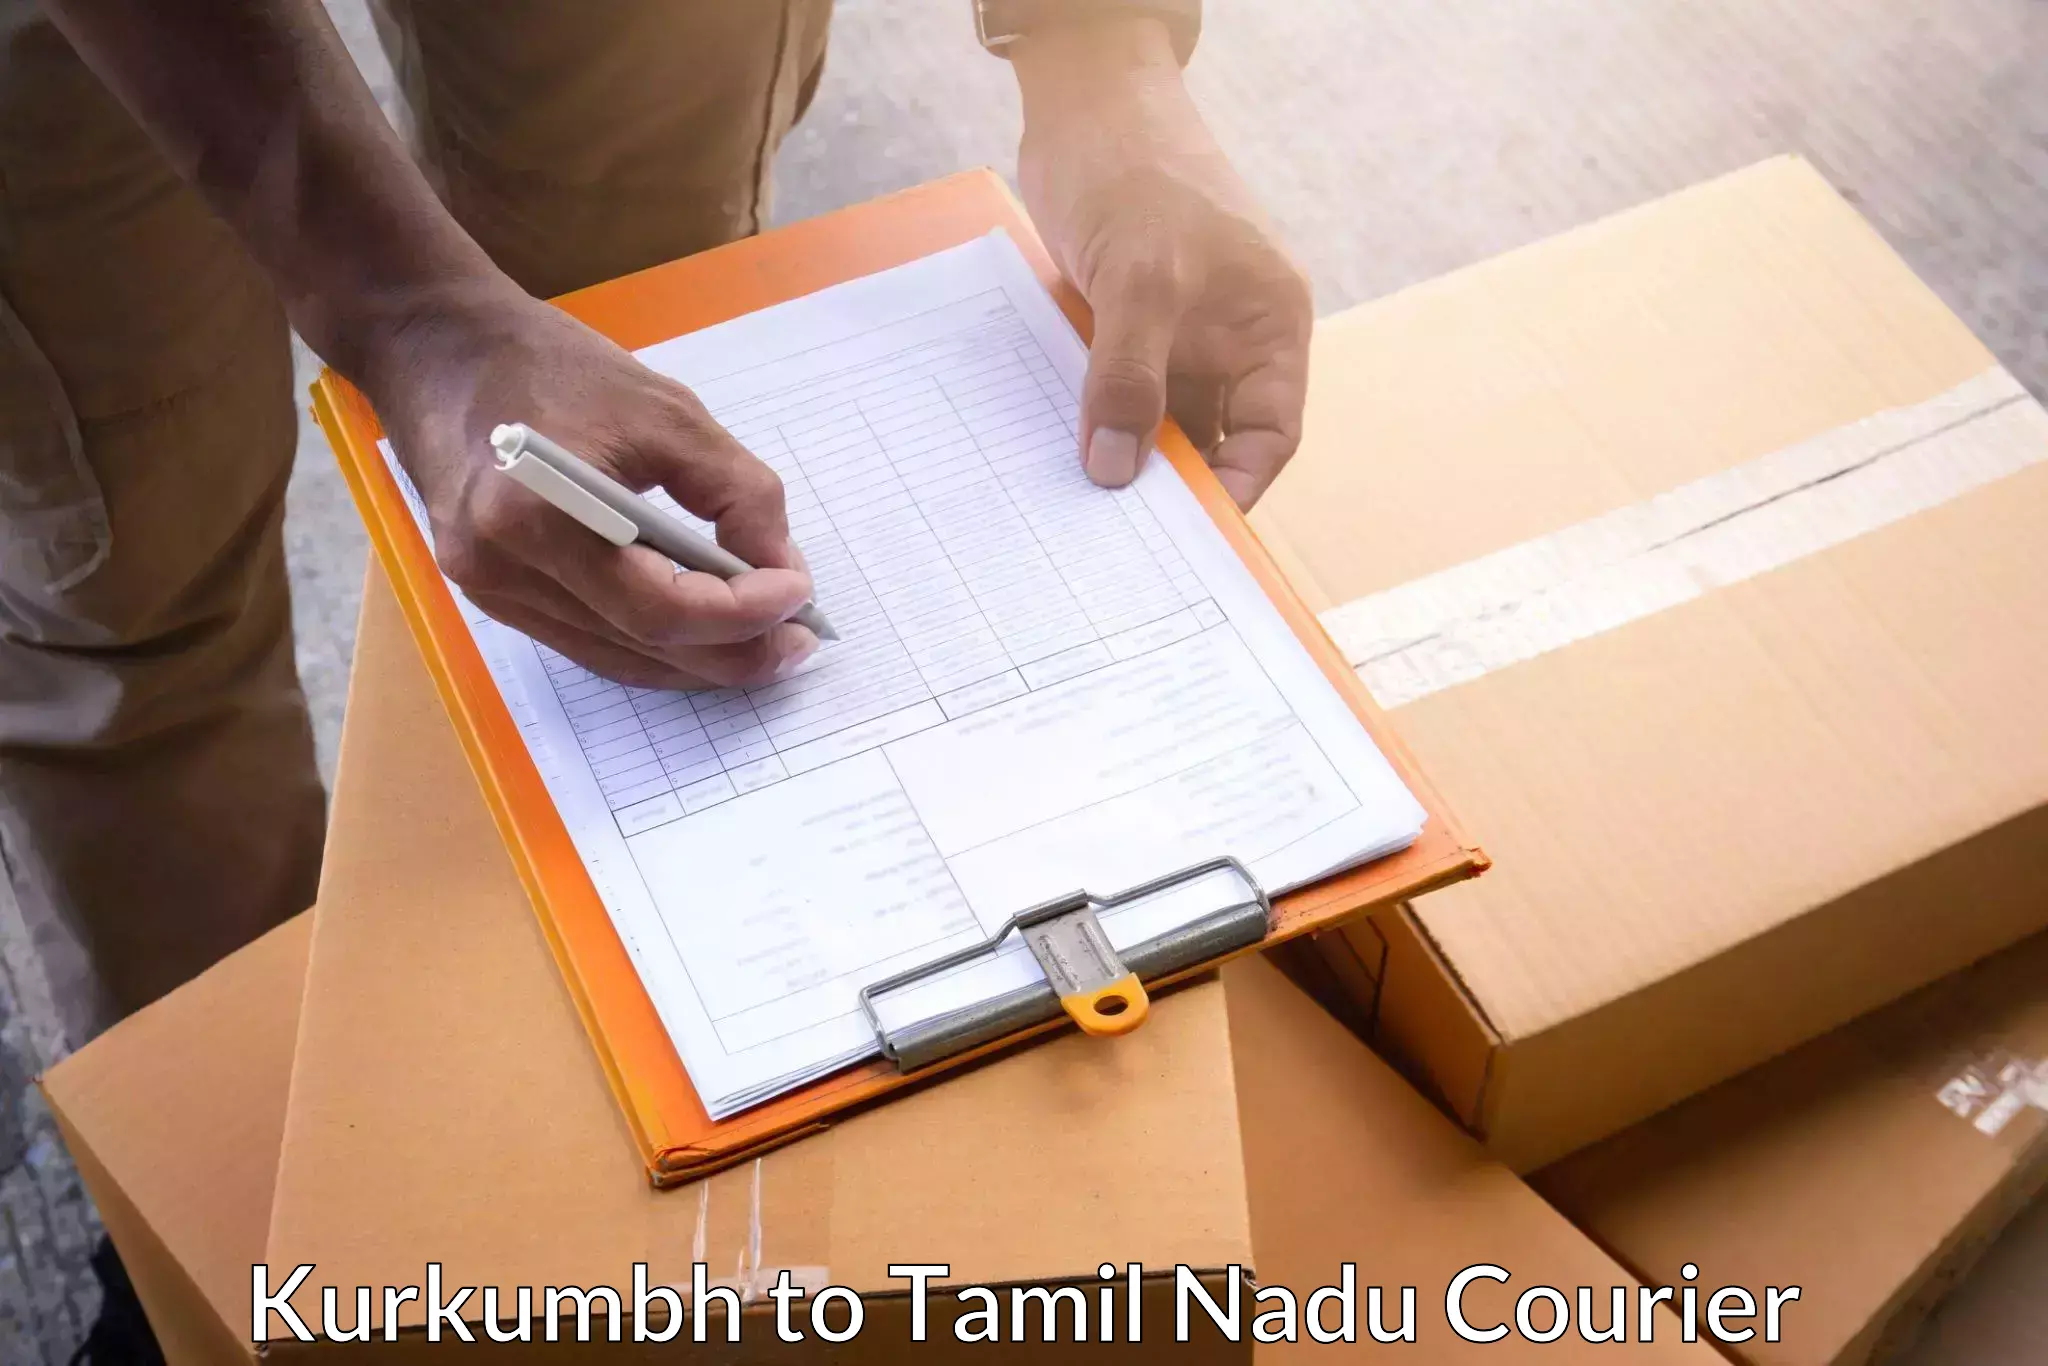 Package delivery network Kurkumbh to Rameswaram